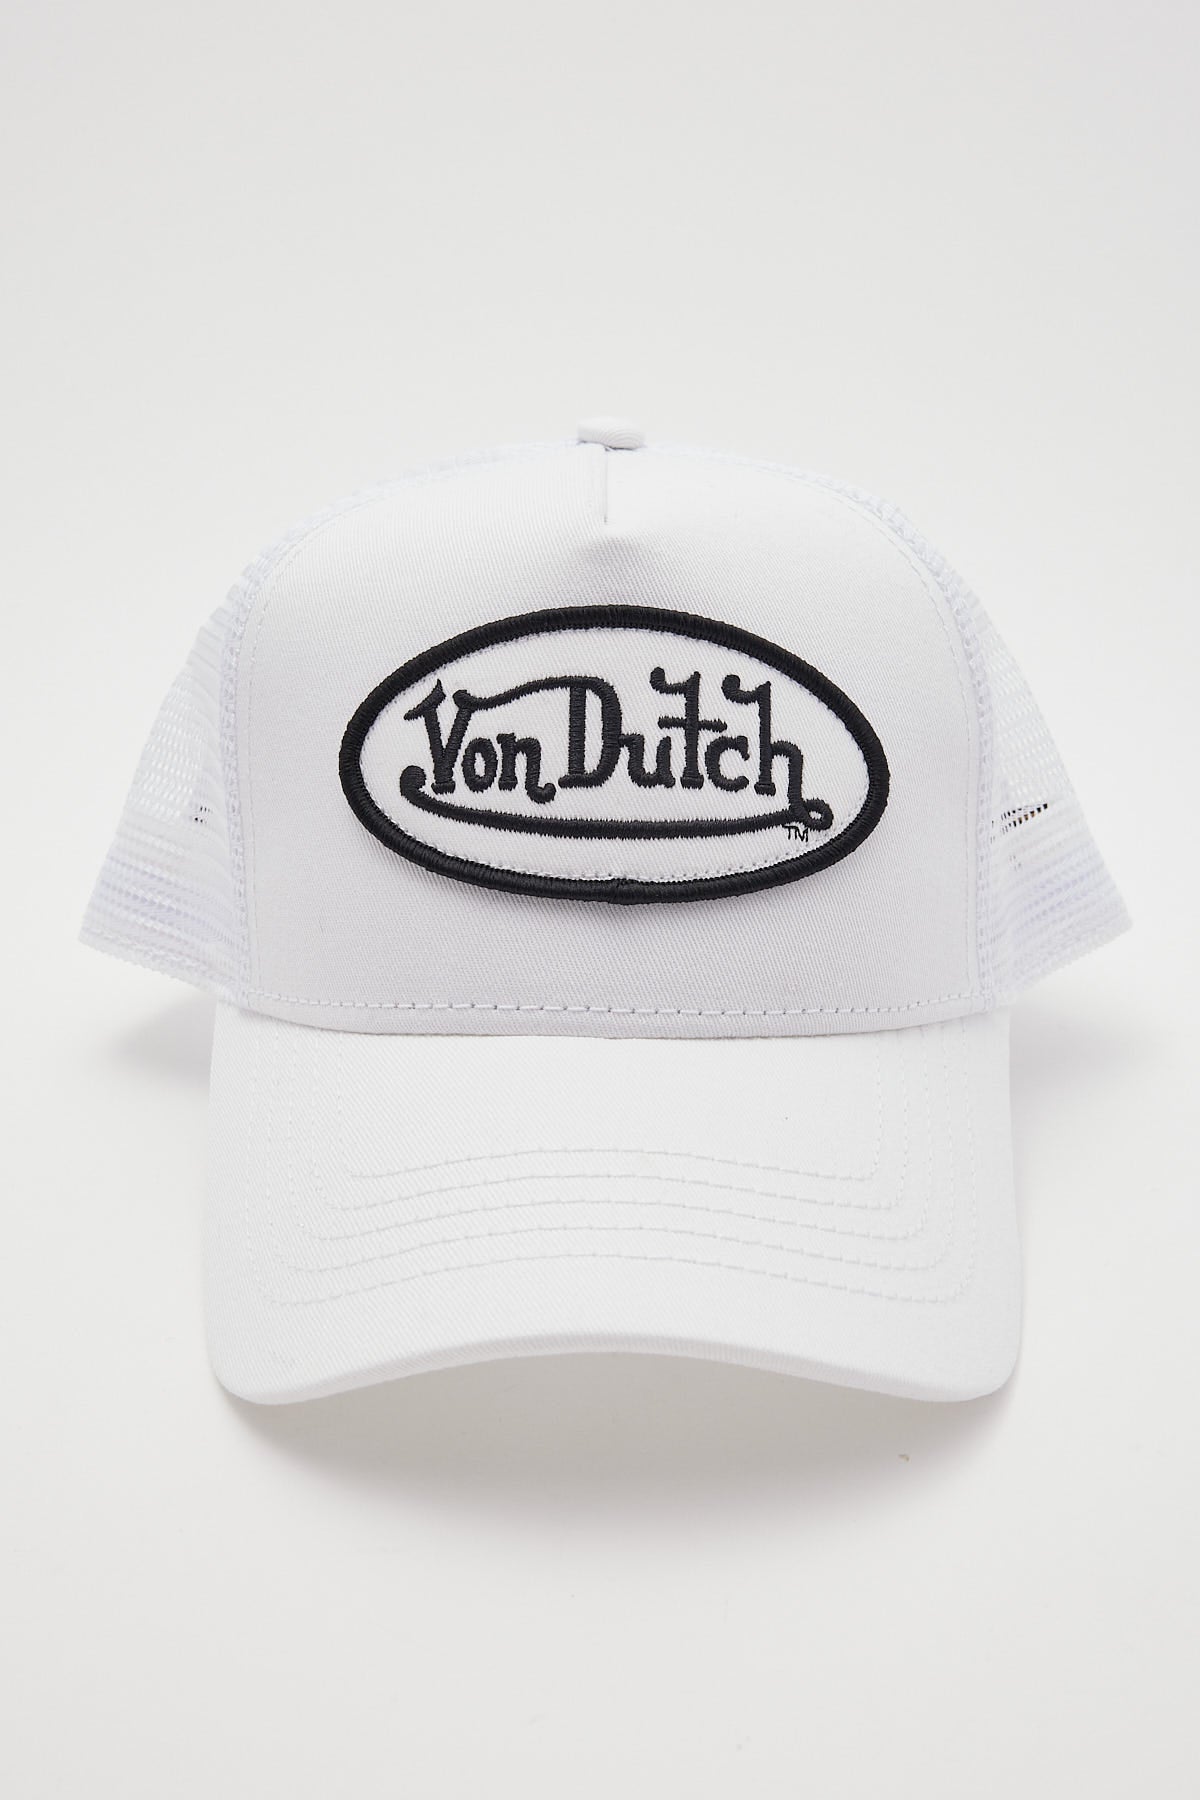 Von Dutch White Trucker Hat White